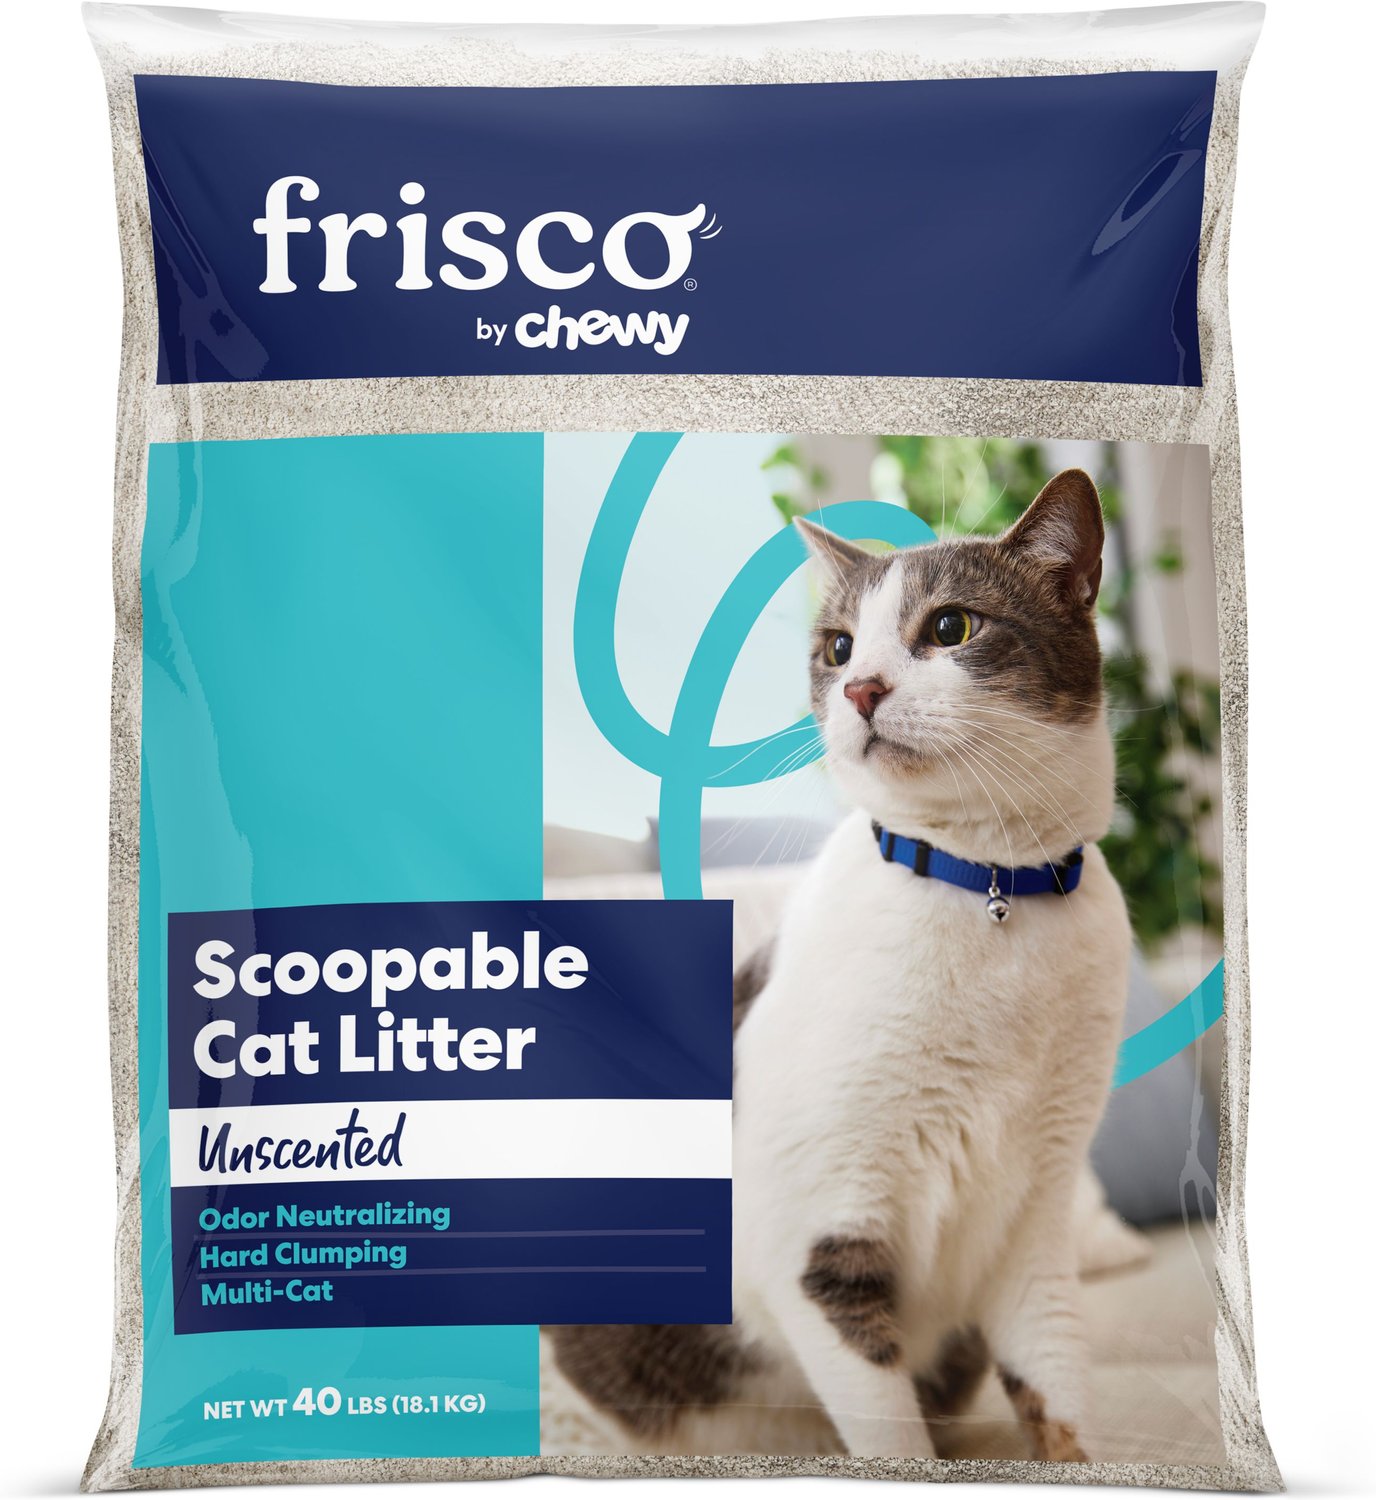 Frisco MultiCat Clumping Cat Litter, 40lb bag